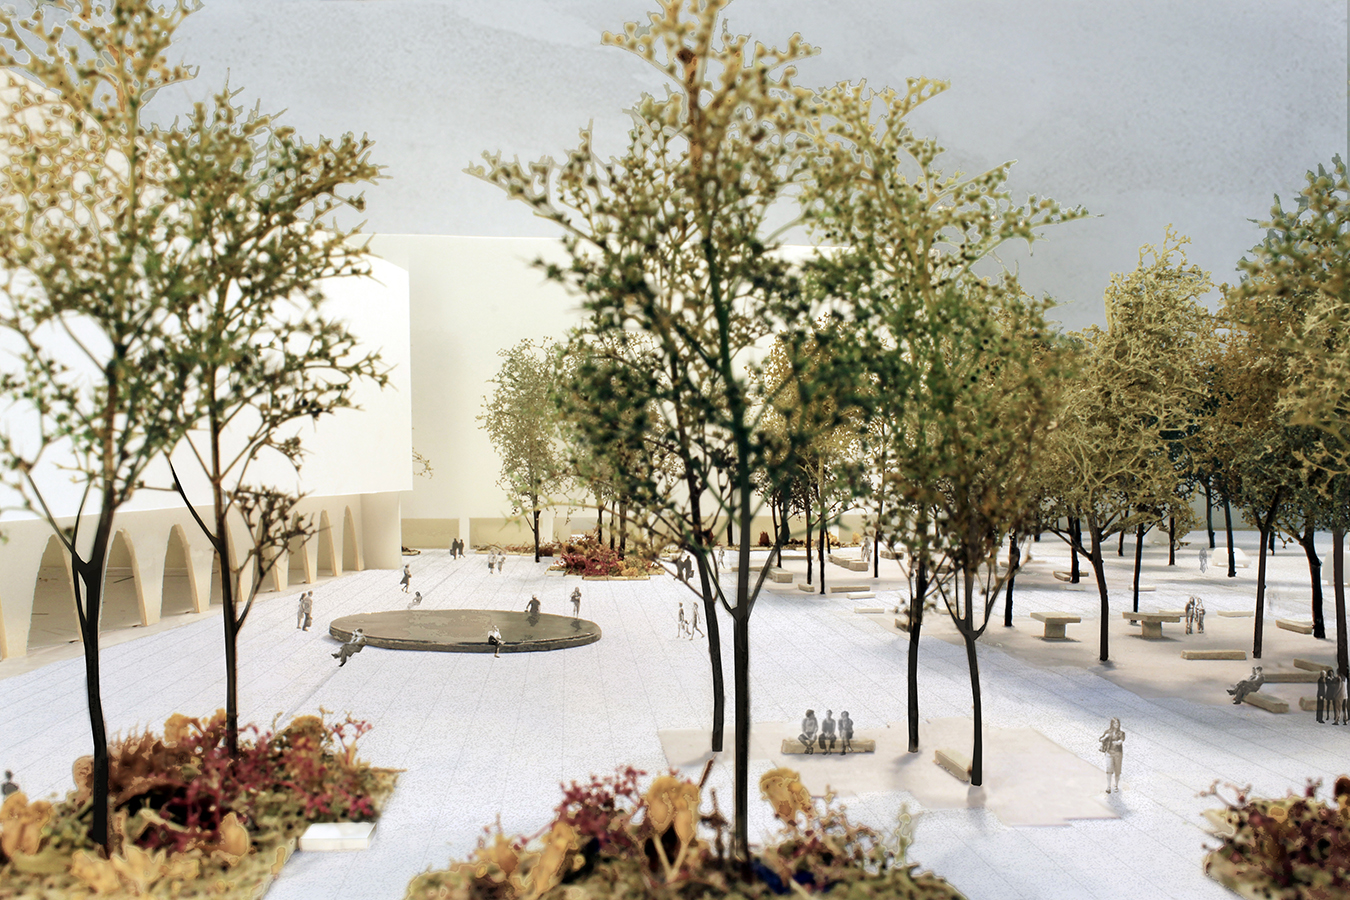 Reininghaus wächst: Viel Grün auf dem neuen und zentralen Platz in Reininghaus sieht der Wettbewerbssieger studio boden vor.